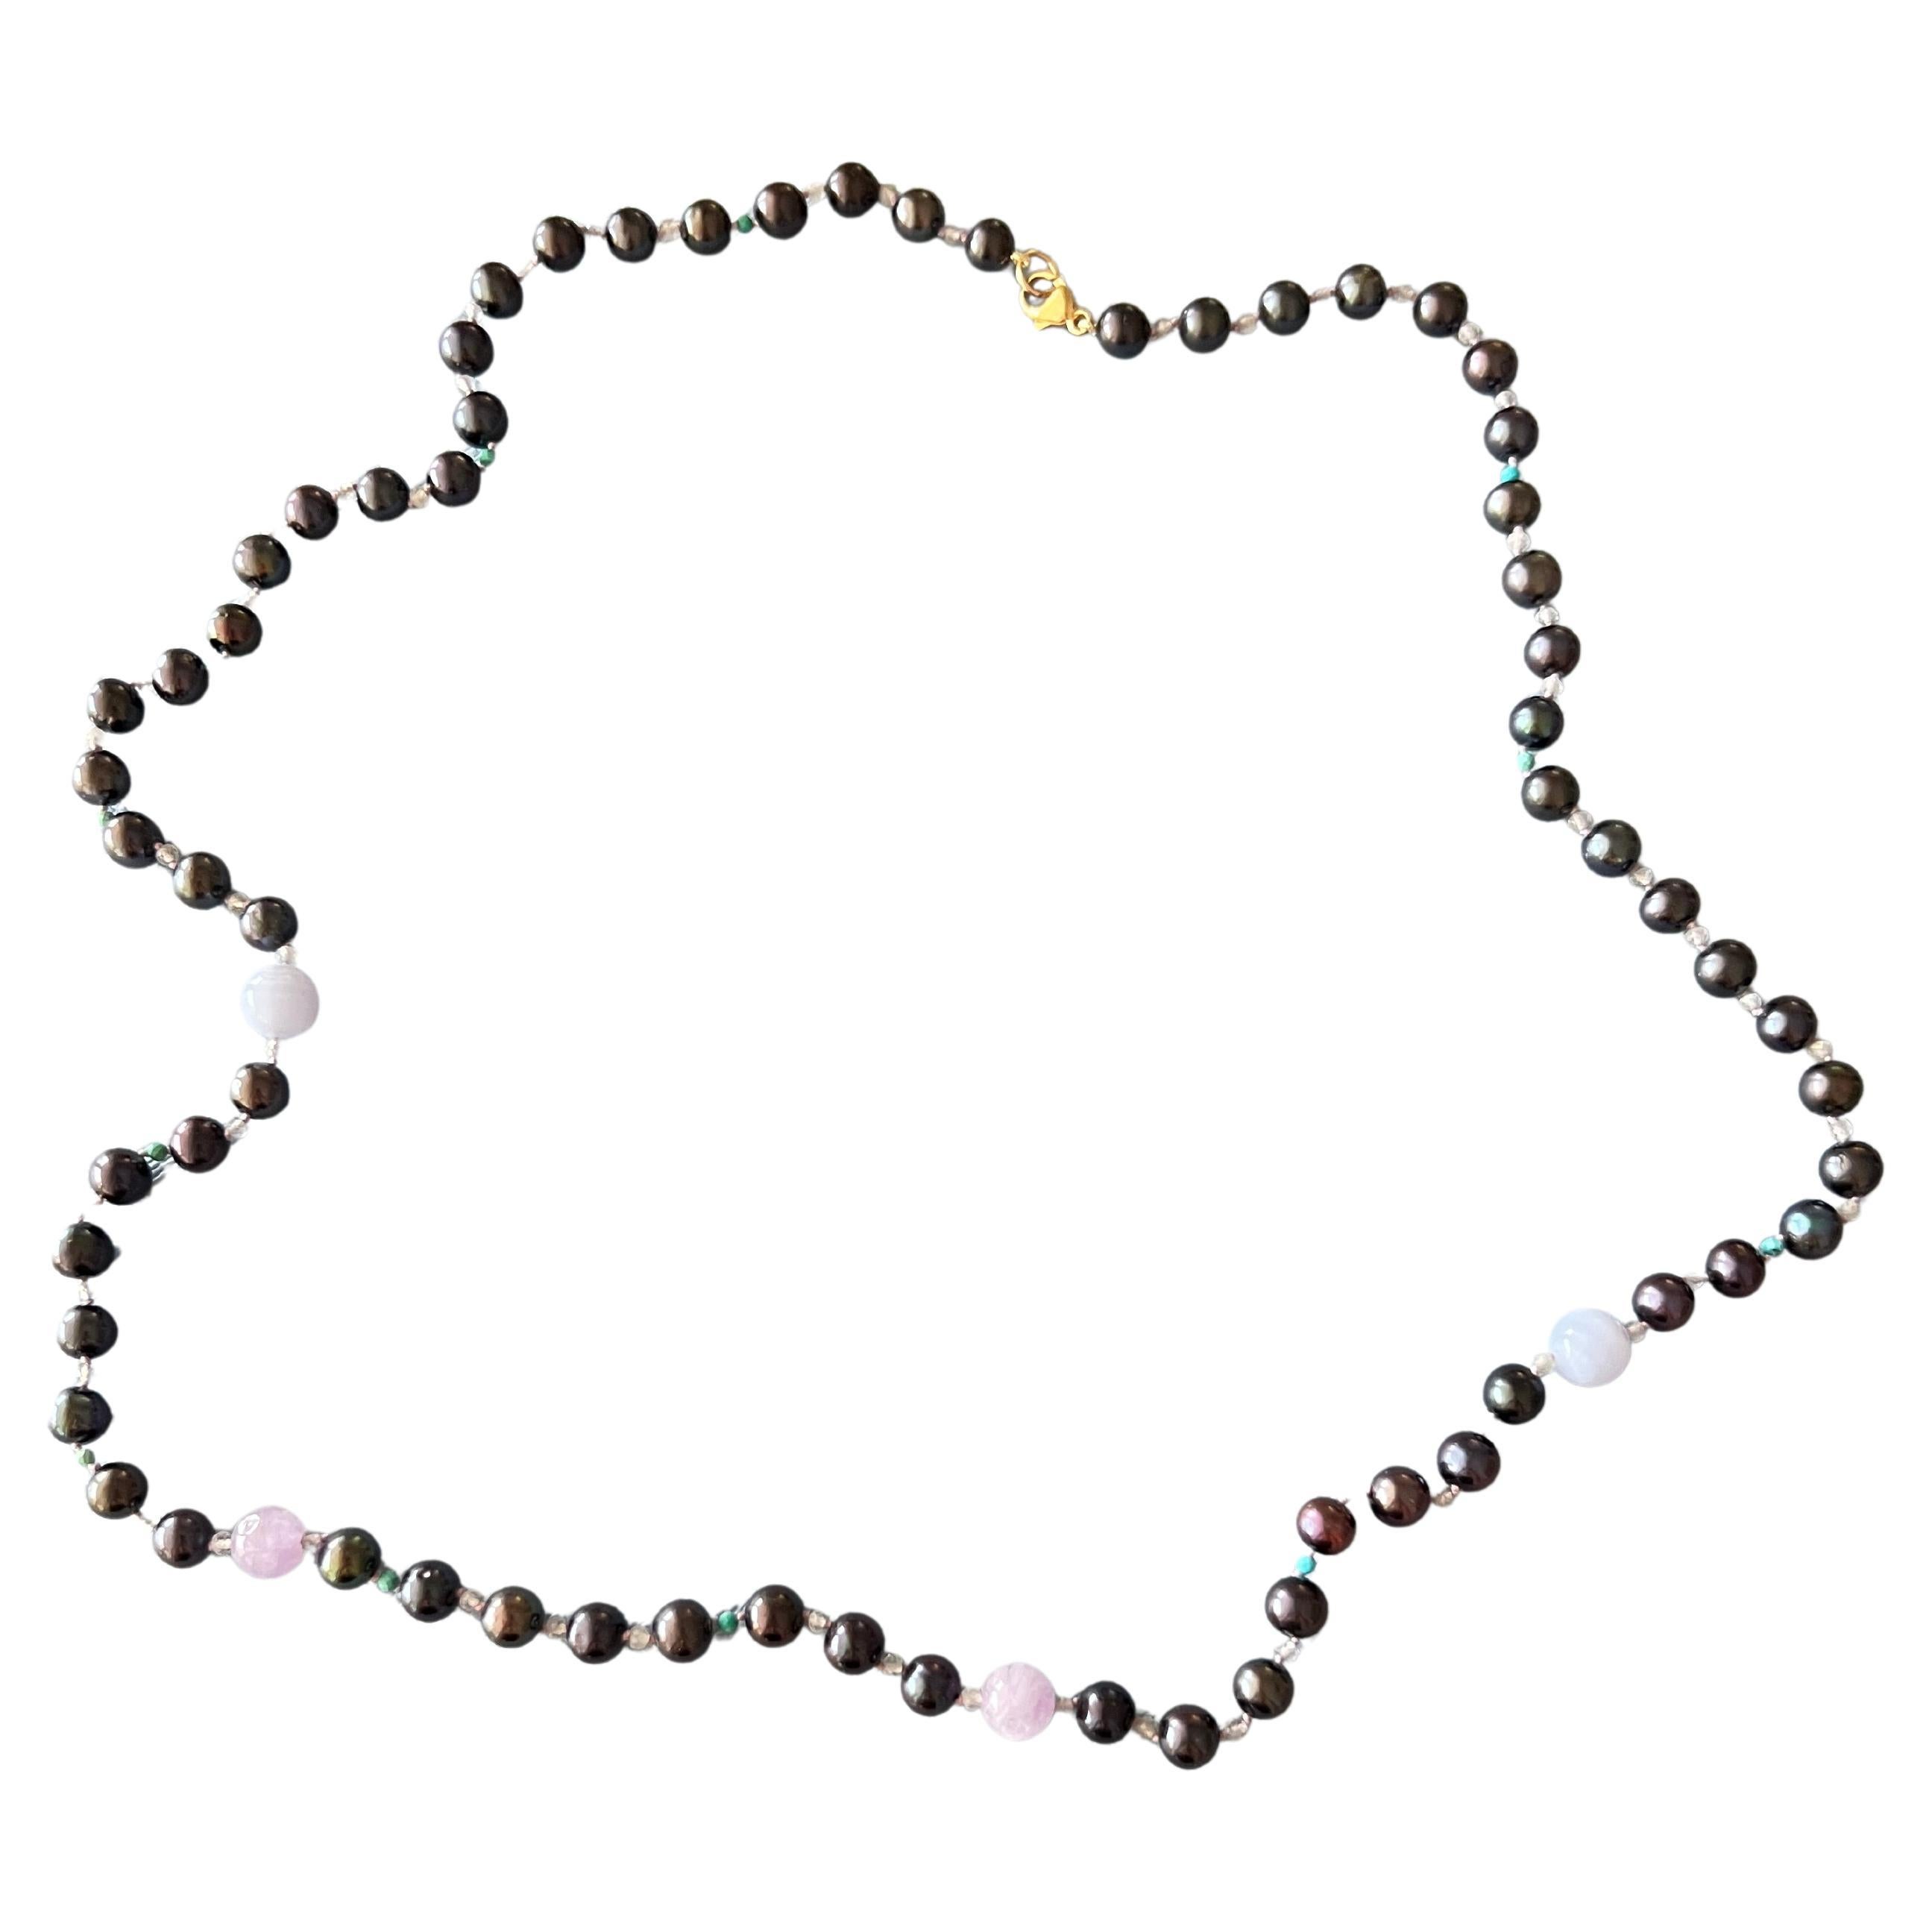 Lange schwarze Perlenkette mit ein paar kontrastierenden Amethyst- und blauen Spitzenachatperlen und mit kleinen grauen, regenbogenfarbig schimmernden Labradoriten und Minitürkisen ist diese Kette wirklich einzigartig. 

Länge: Ungefähr Halskette